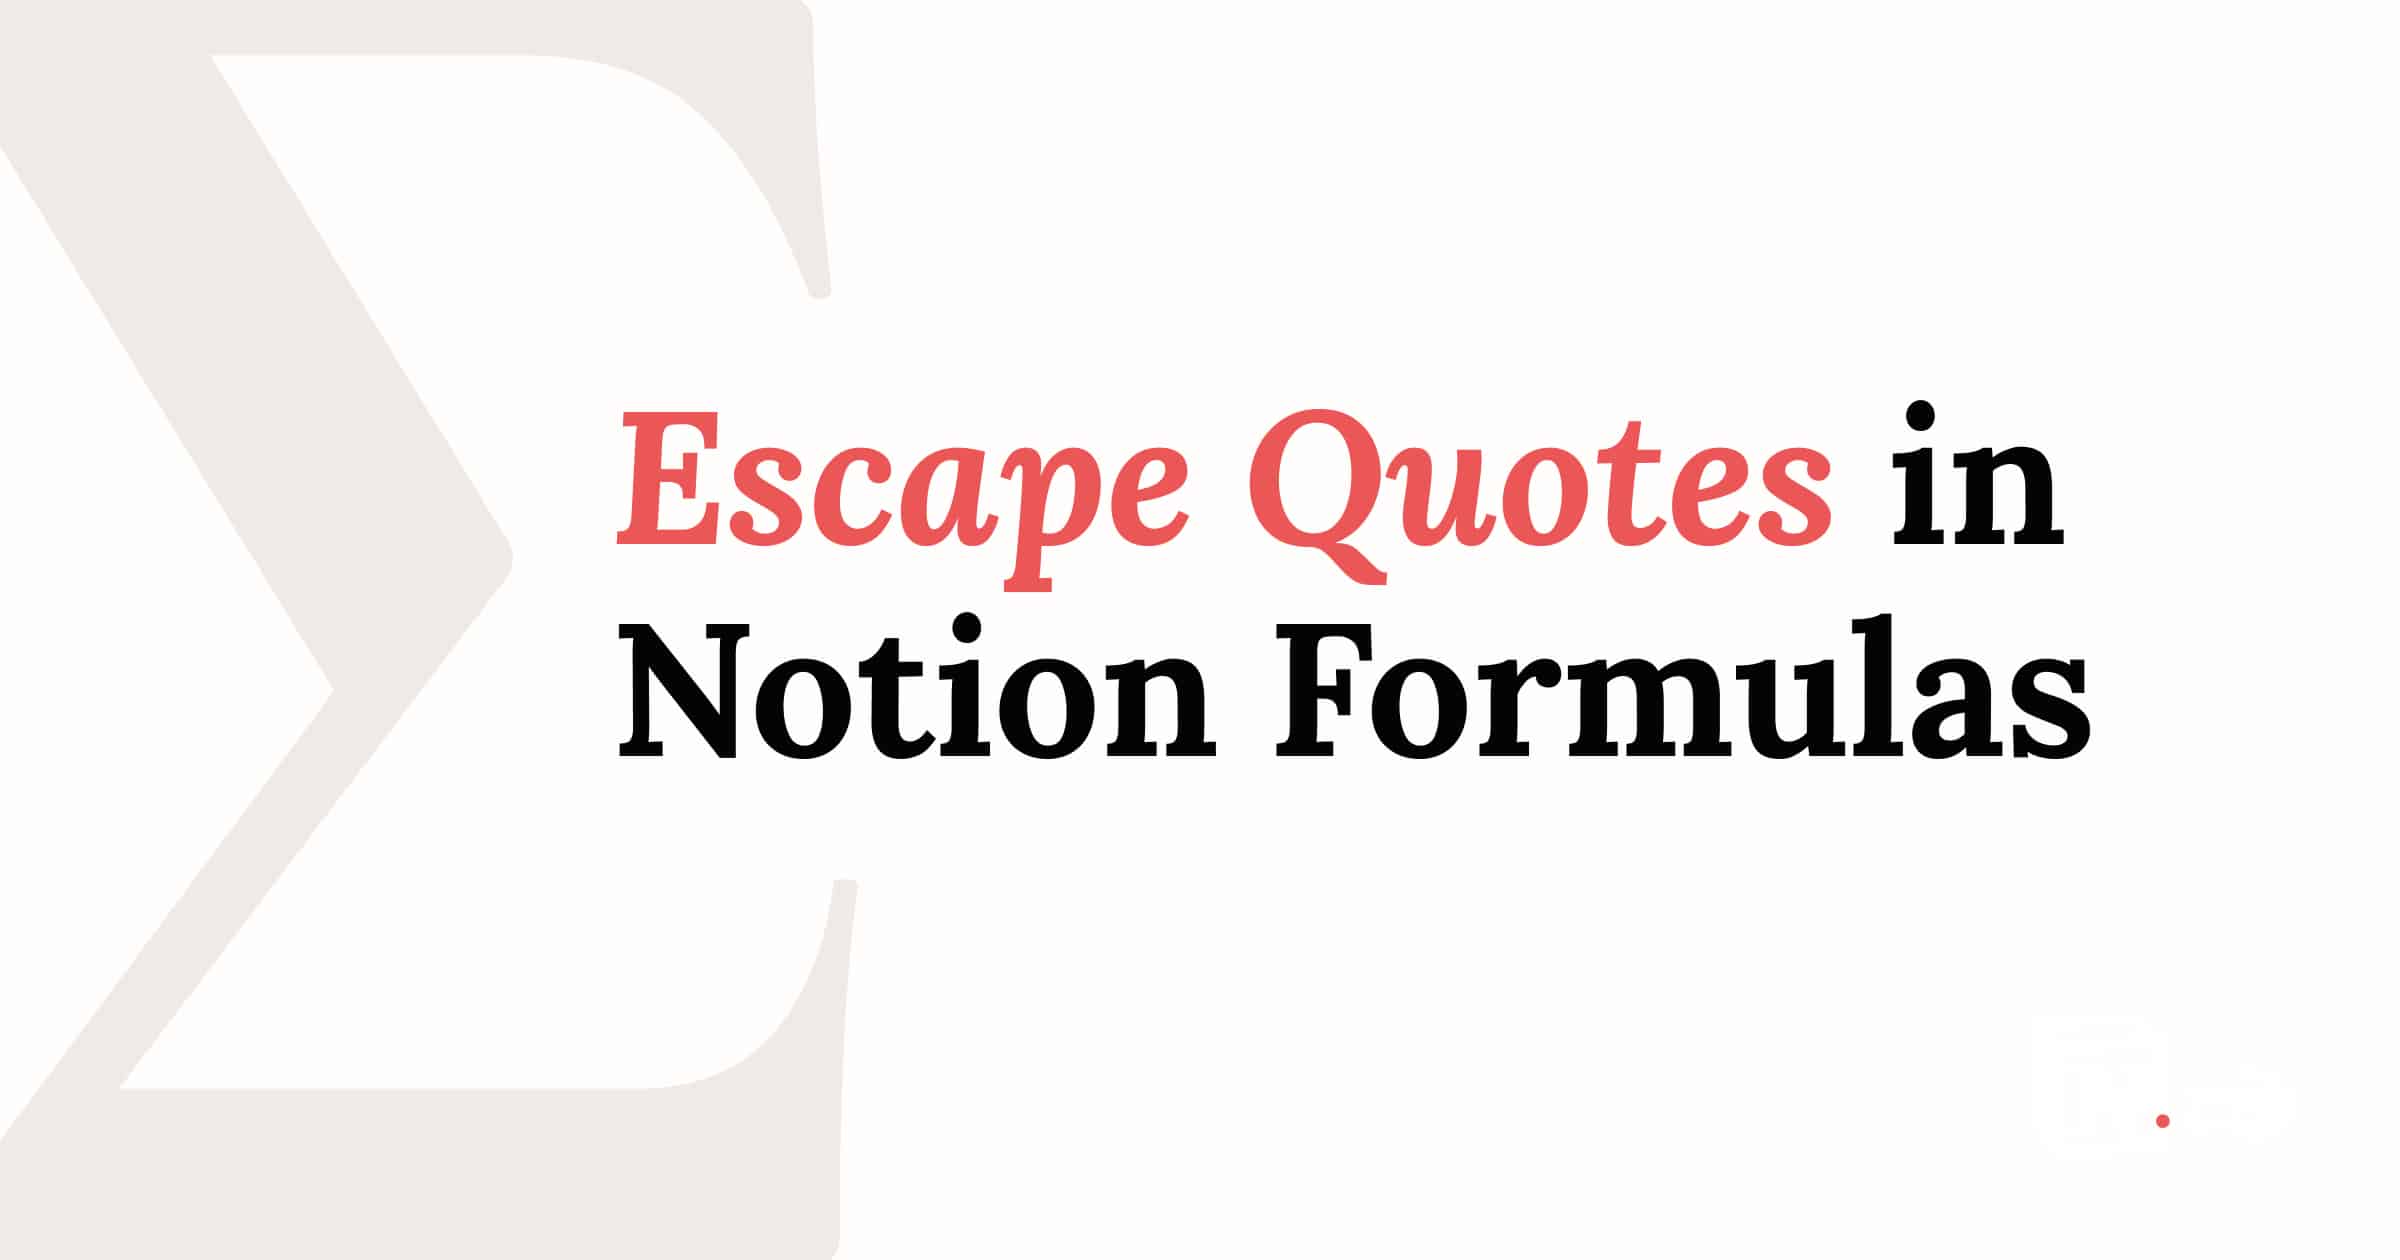 Escape Quotes in Notion Formulas